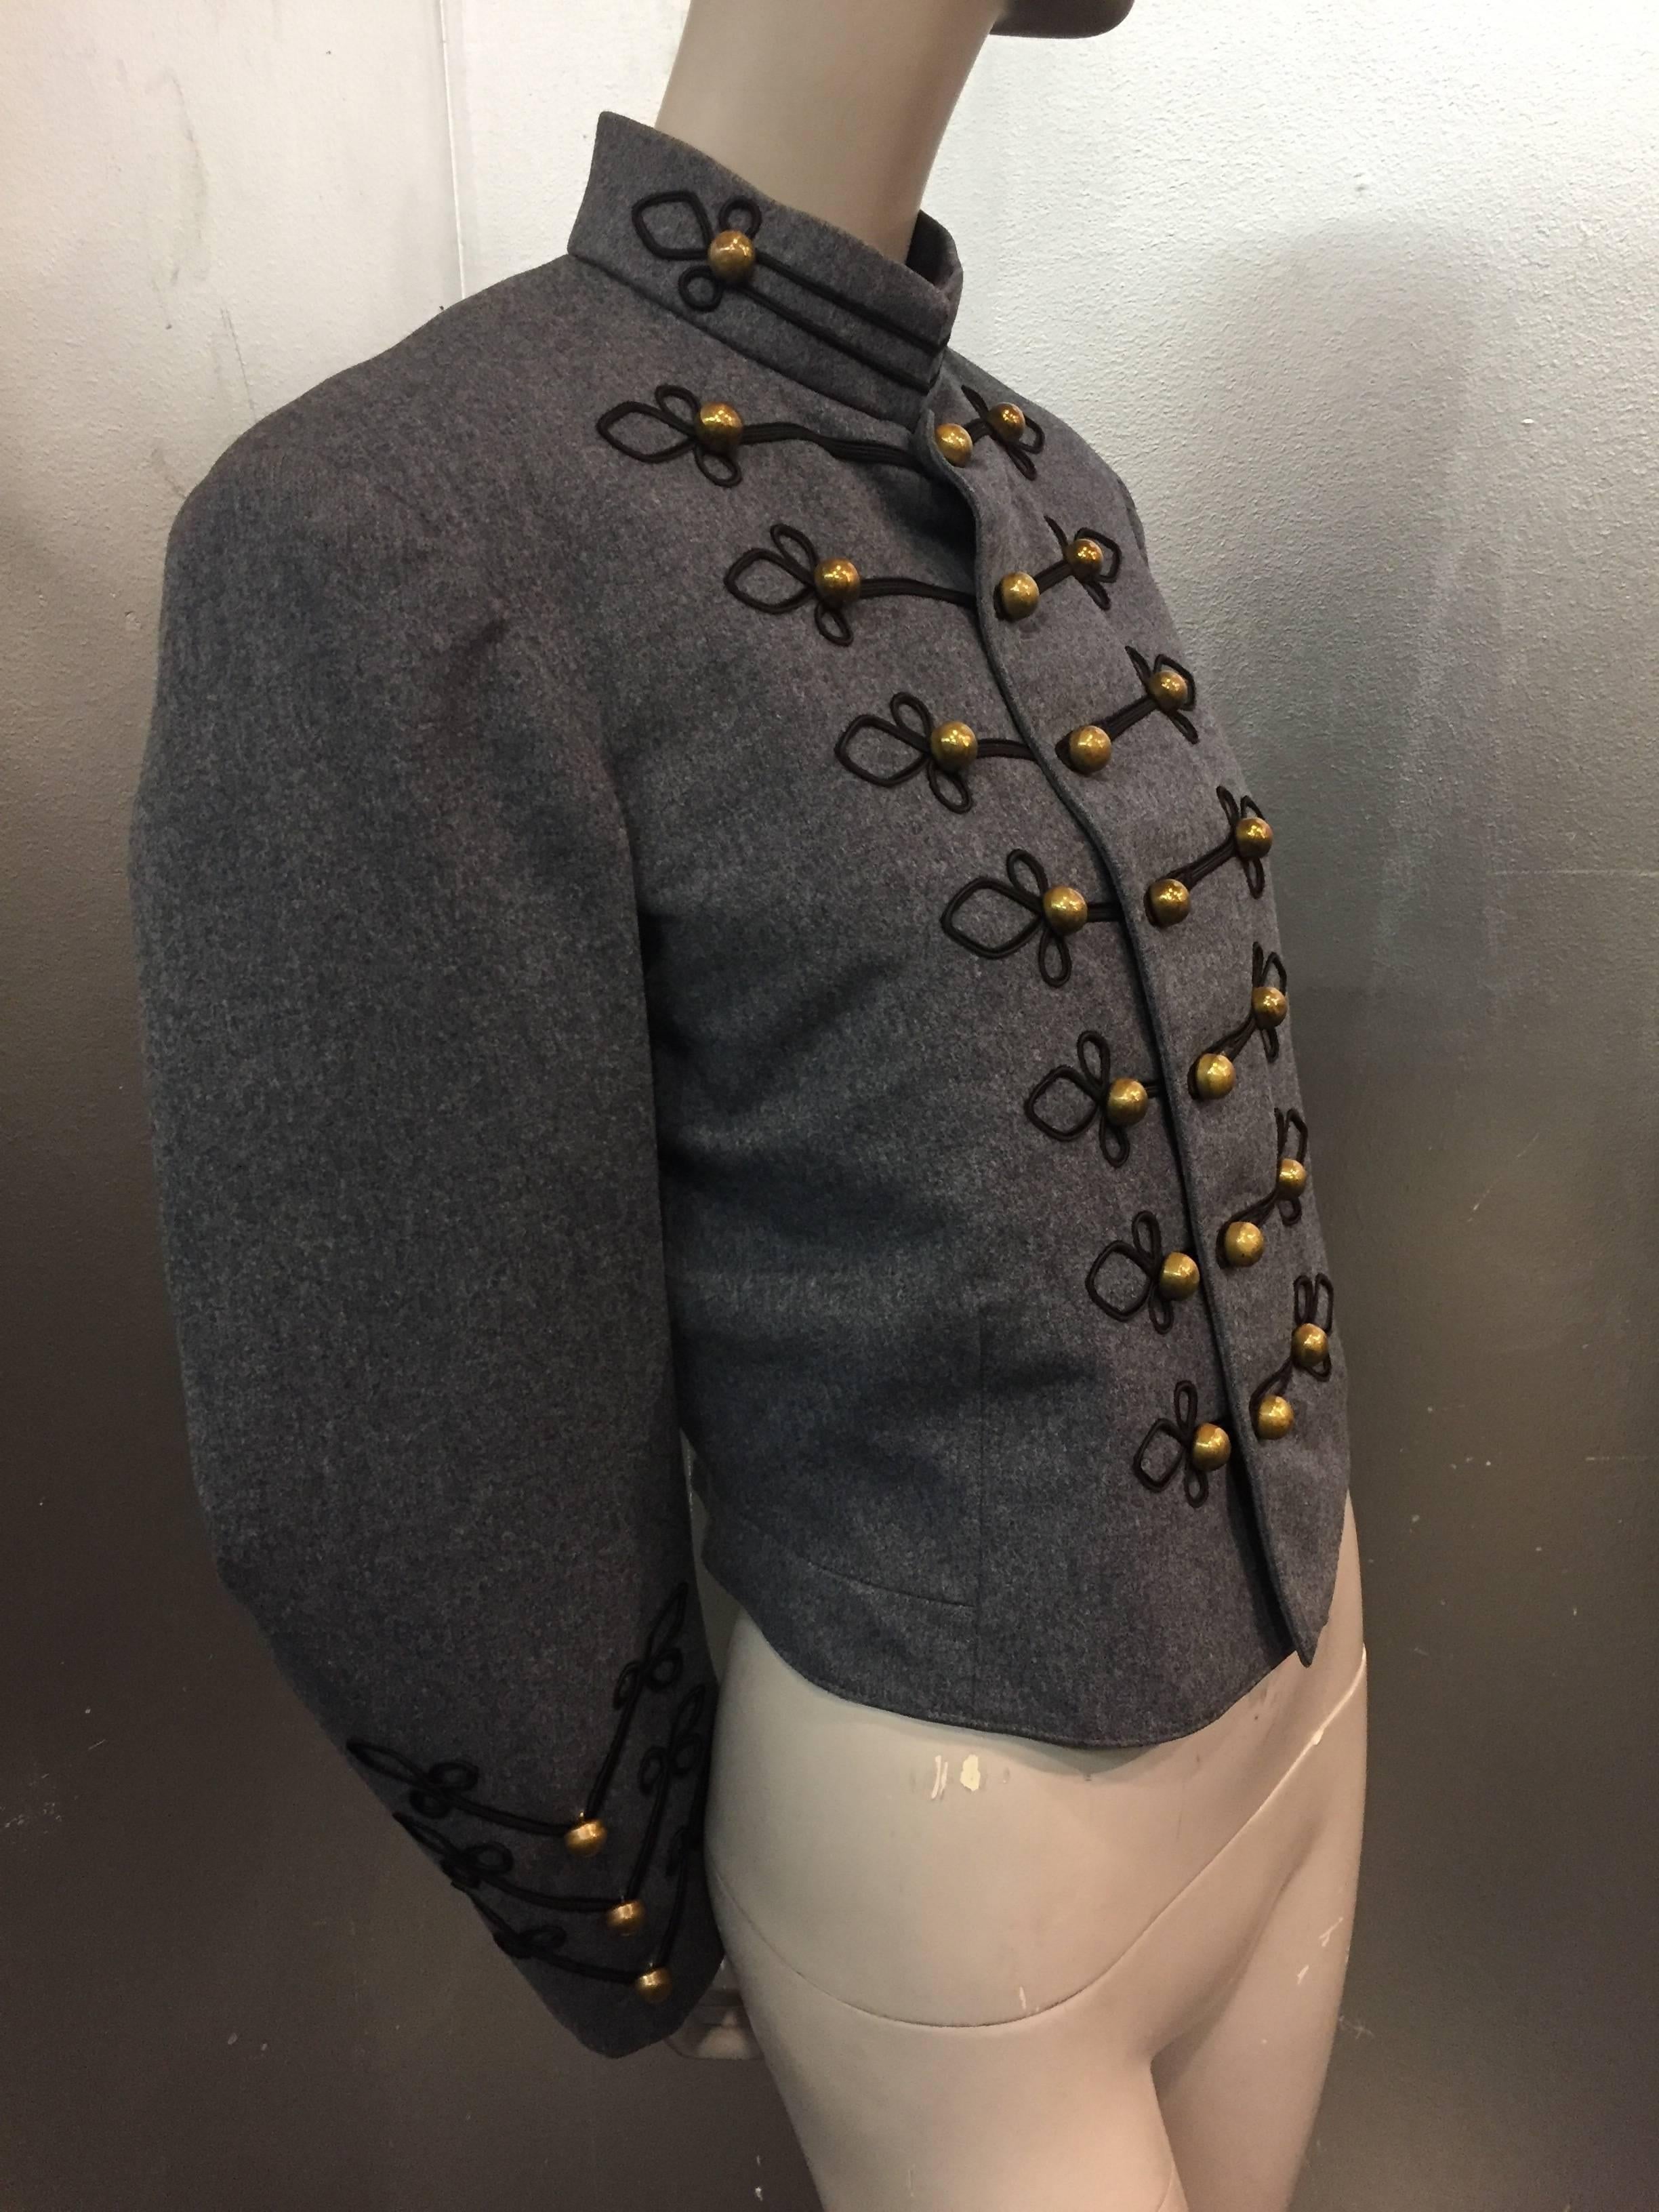 Dies ist eine fantastische und on-trend 1950's Military Band Jacket in einer Herrengröße Small. Ideal für einen modernen Frauen-Look, wenn er locker getragen wird. Hergestellt aus mittelschwerer Wolle mit wunderschönen Messingknöpfen und